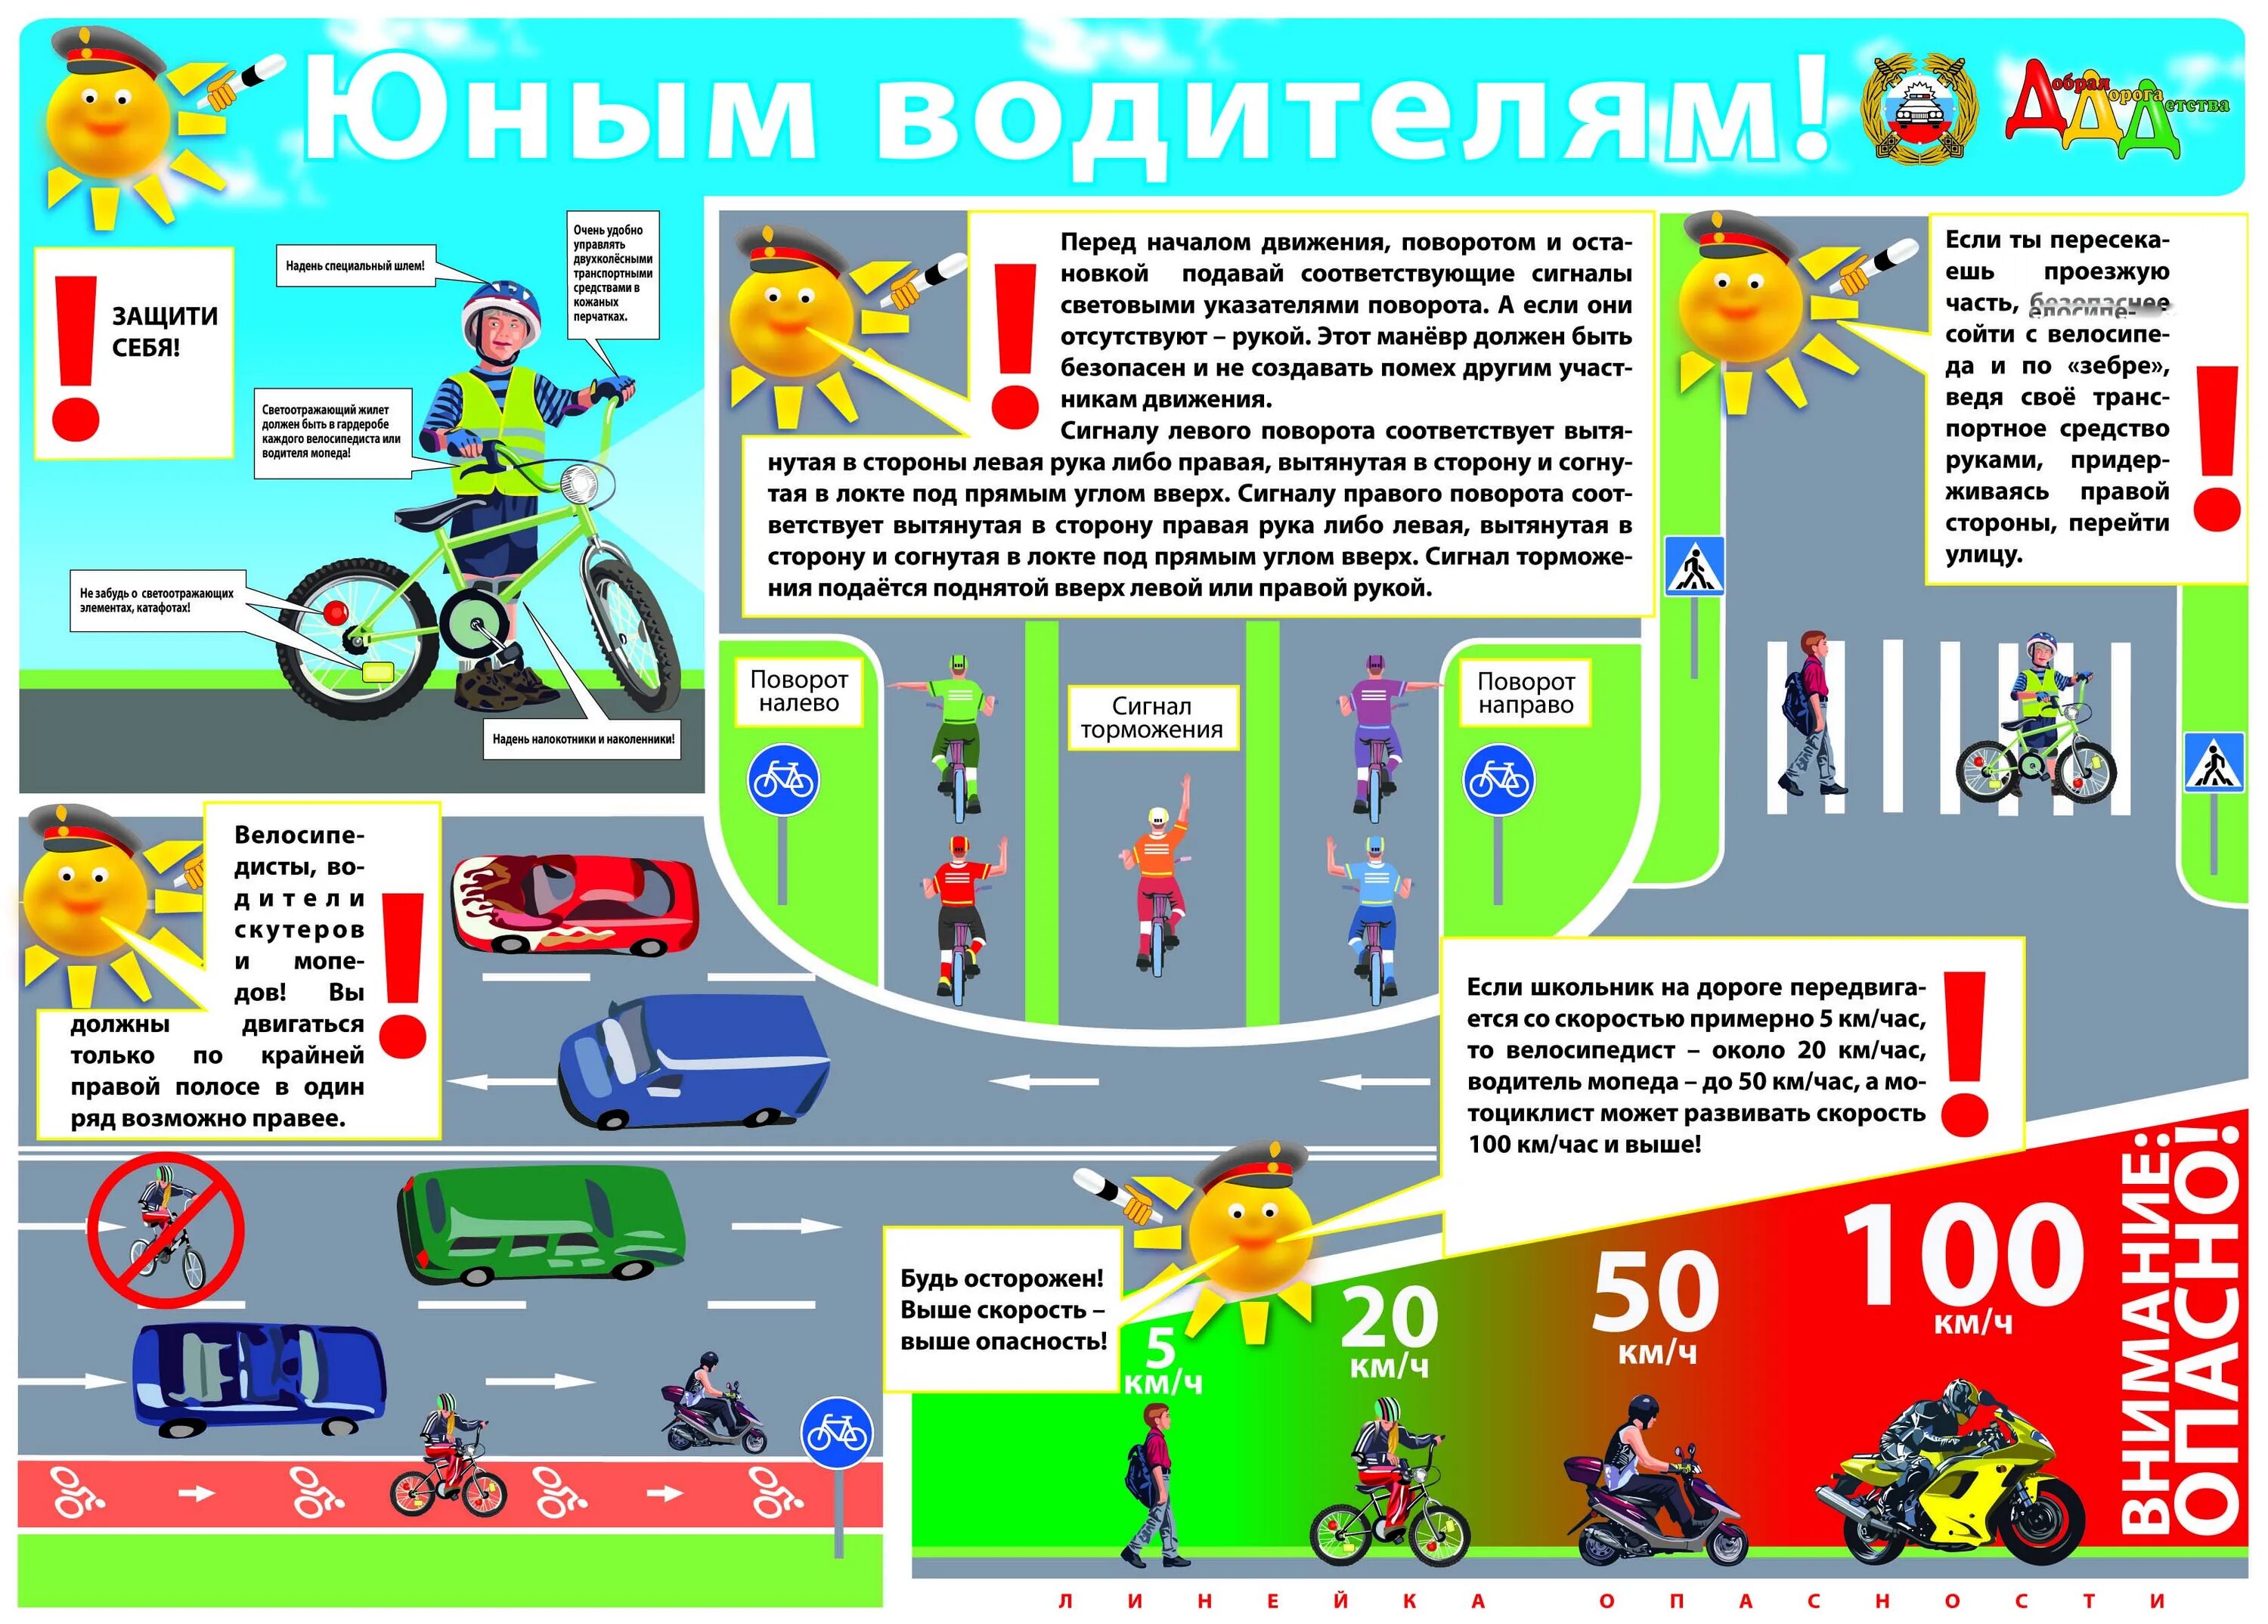 Статья правила дорожного движения детям. Плакат правил дорожного движения. ПДД для велосипедистовэ для детей. Плакат по правилам дорожного движения для детей. Правило дорожного движение.